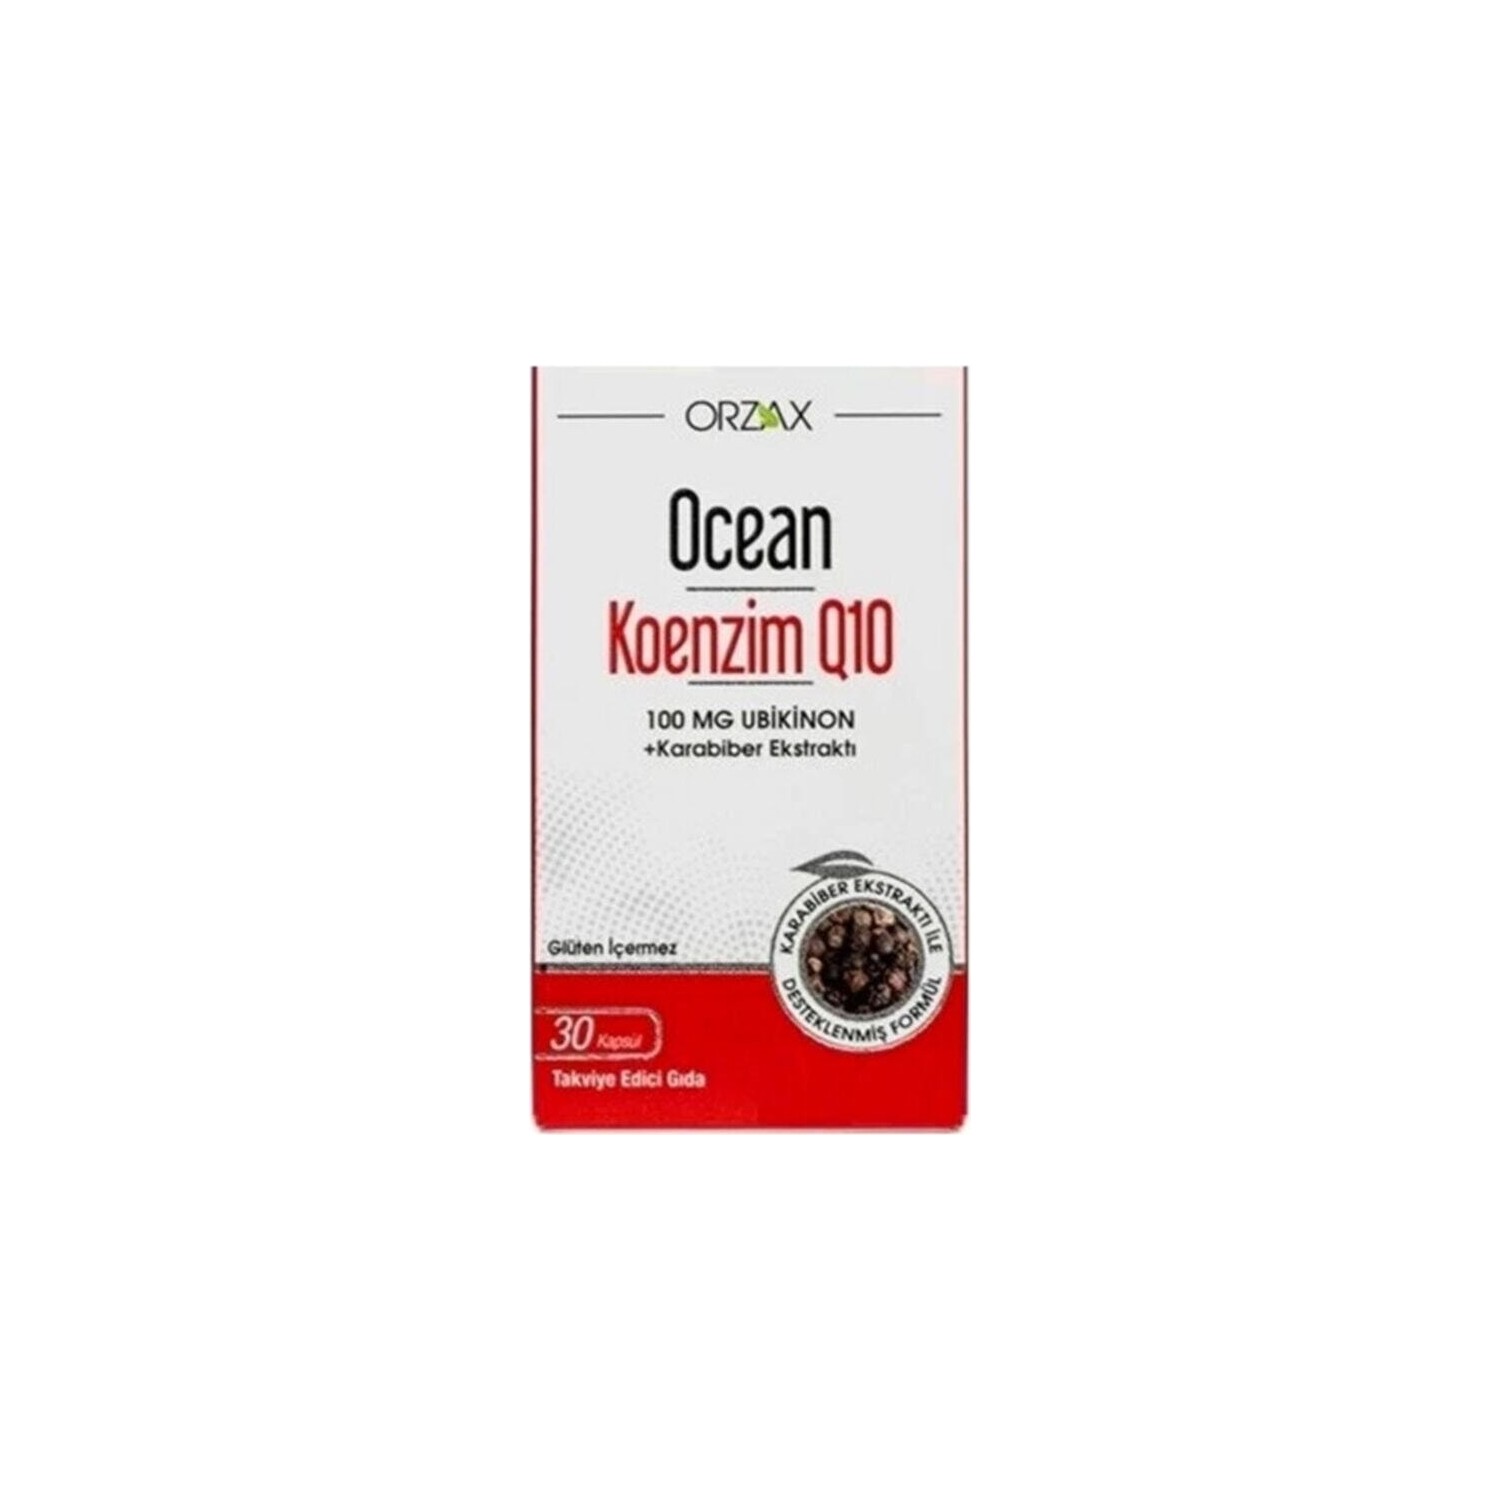 Коэнзим Q10 Ocean 100 мг, 30 капсул dr mercola липосомальный коэнзим q10 100 мг 30 капсул